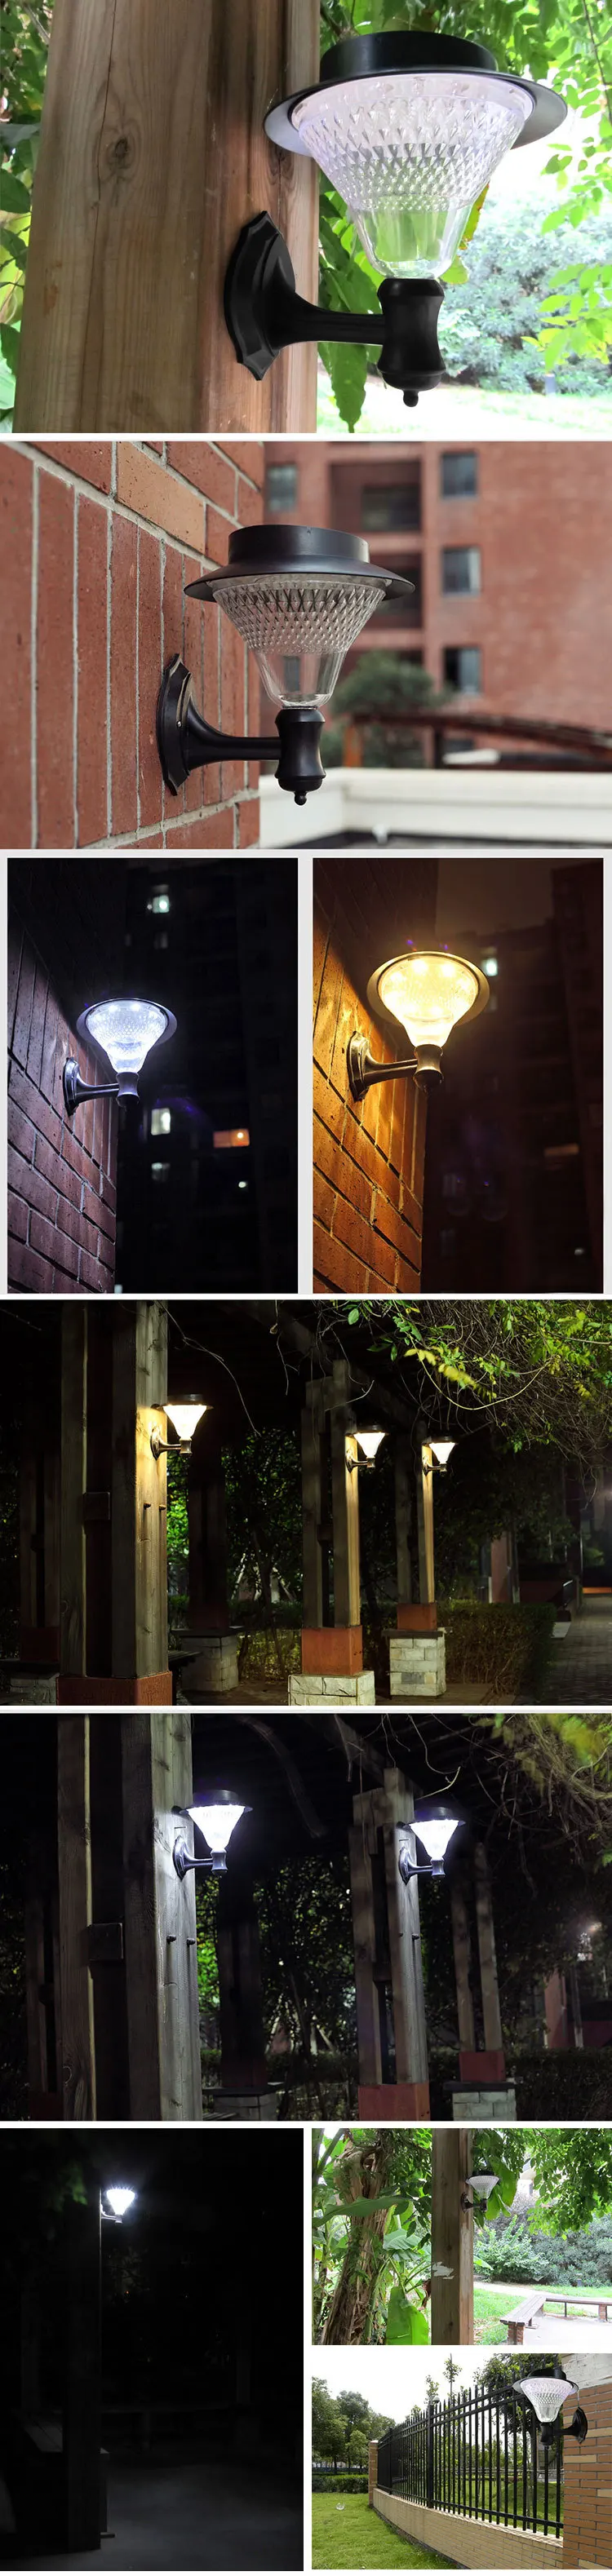 TRANSCTEGO 24 светодиодный светильник на солнечных батареях для сада, настенный светильник для улицы, водонепроницаемый, супер яркий, для сада, улицы, газона, крыльца, светильник